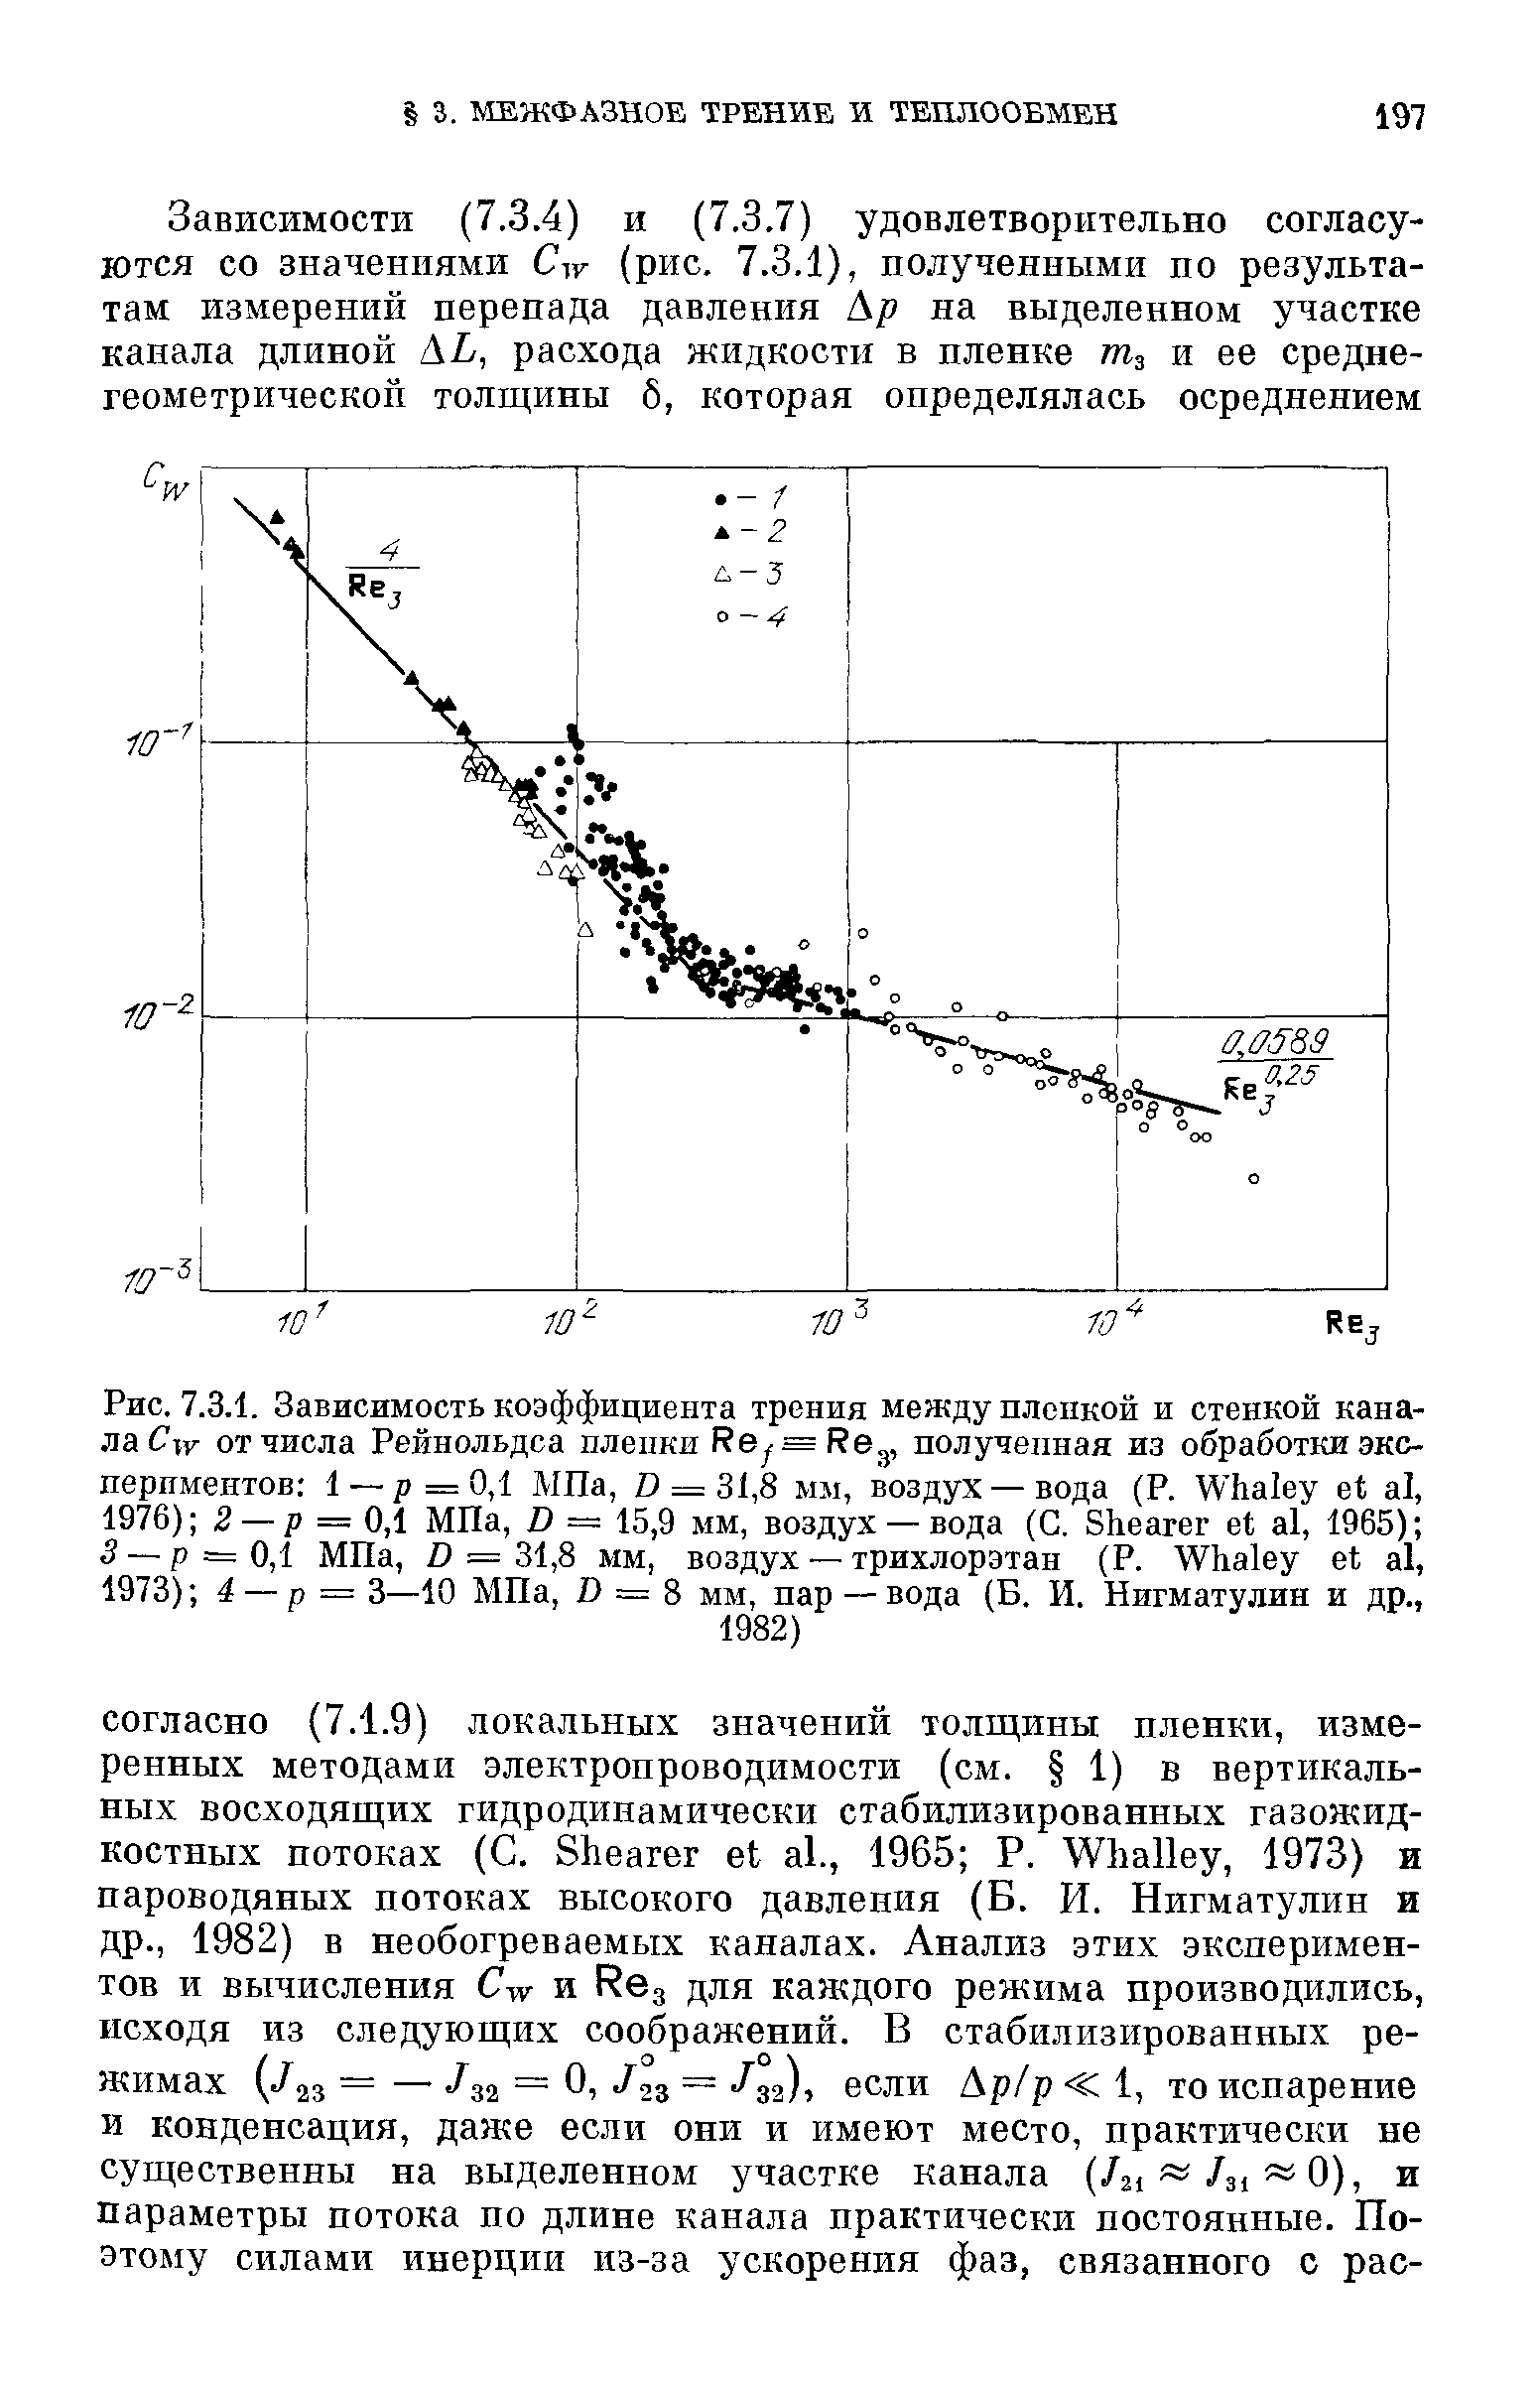 Рис. 7.3.1. Зависимость коэффициента трения между пленкой и стенкой канала tf от числа Рейнольдса пленки Re =Re , полученная из обработки экспериментов 1 —р=0,1 МПа, 0 = 31,8 мы, воздух —вода (Р. Whaley et al, 1976) 2 — р = 0,1 МПа, В = 15,9 мм, воздух — вода (С. Shearer et al, 1965) 3 — р = 0,1 МПа, D = 31,8 мм, воздух — трихлорэтан (Р. Whaley et al, 1973) 4 — р = 3—10 МПа, J3 = 8 мм, пар — вода Б. И. Нигматулин и др.,
